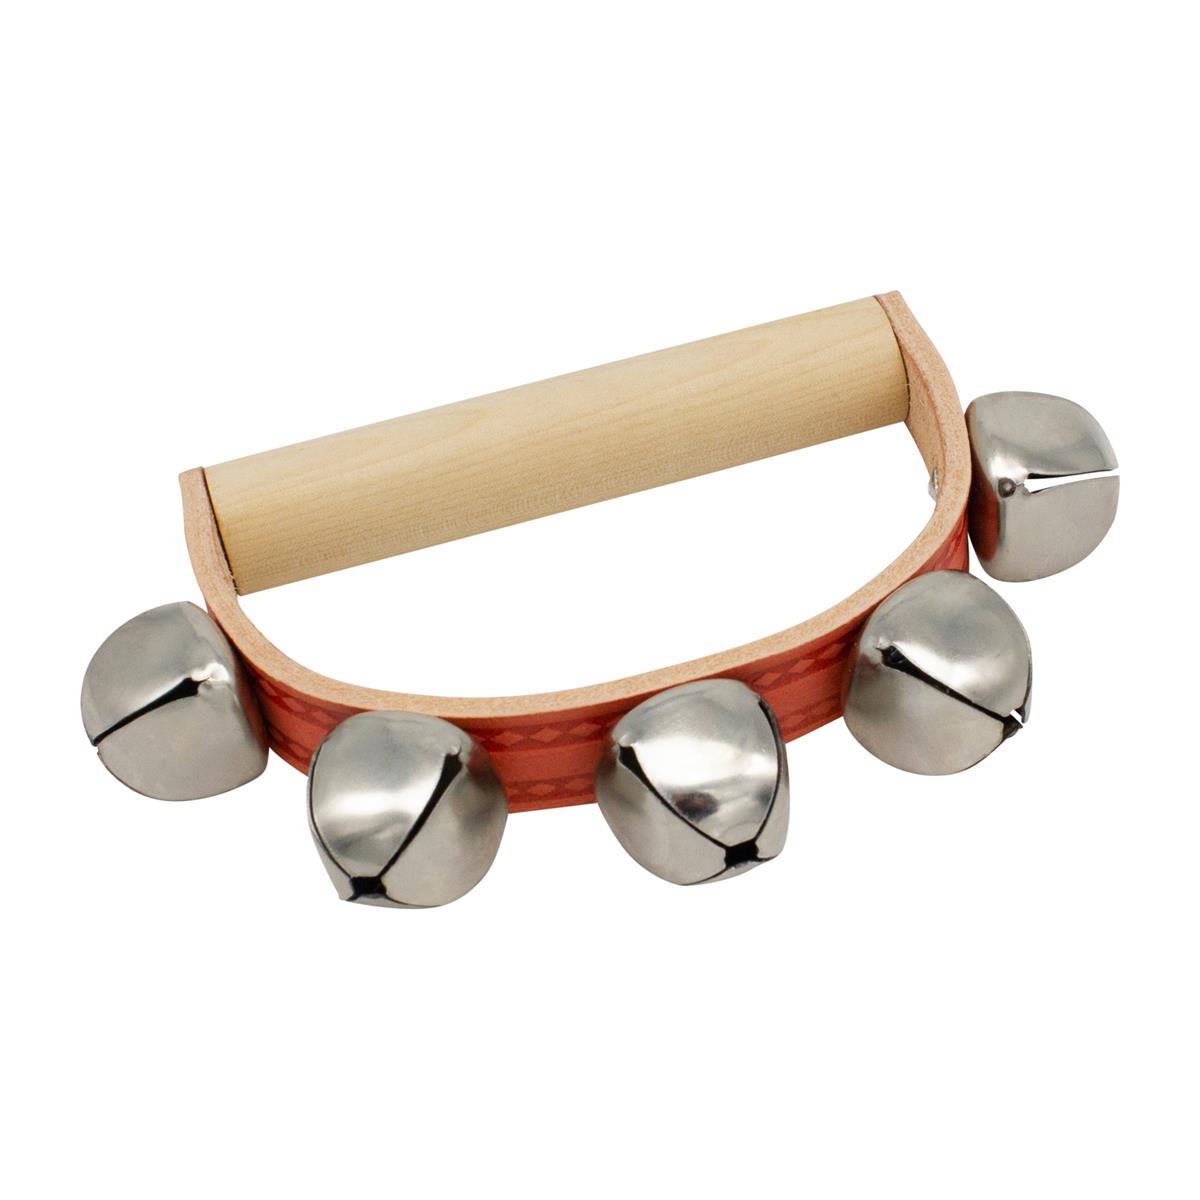 GICO Schellenkranz aus Holz für Kinder mit 5 Schellen Musikinstrument - 3852